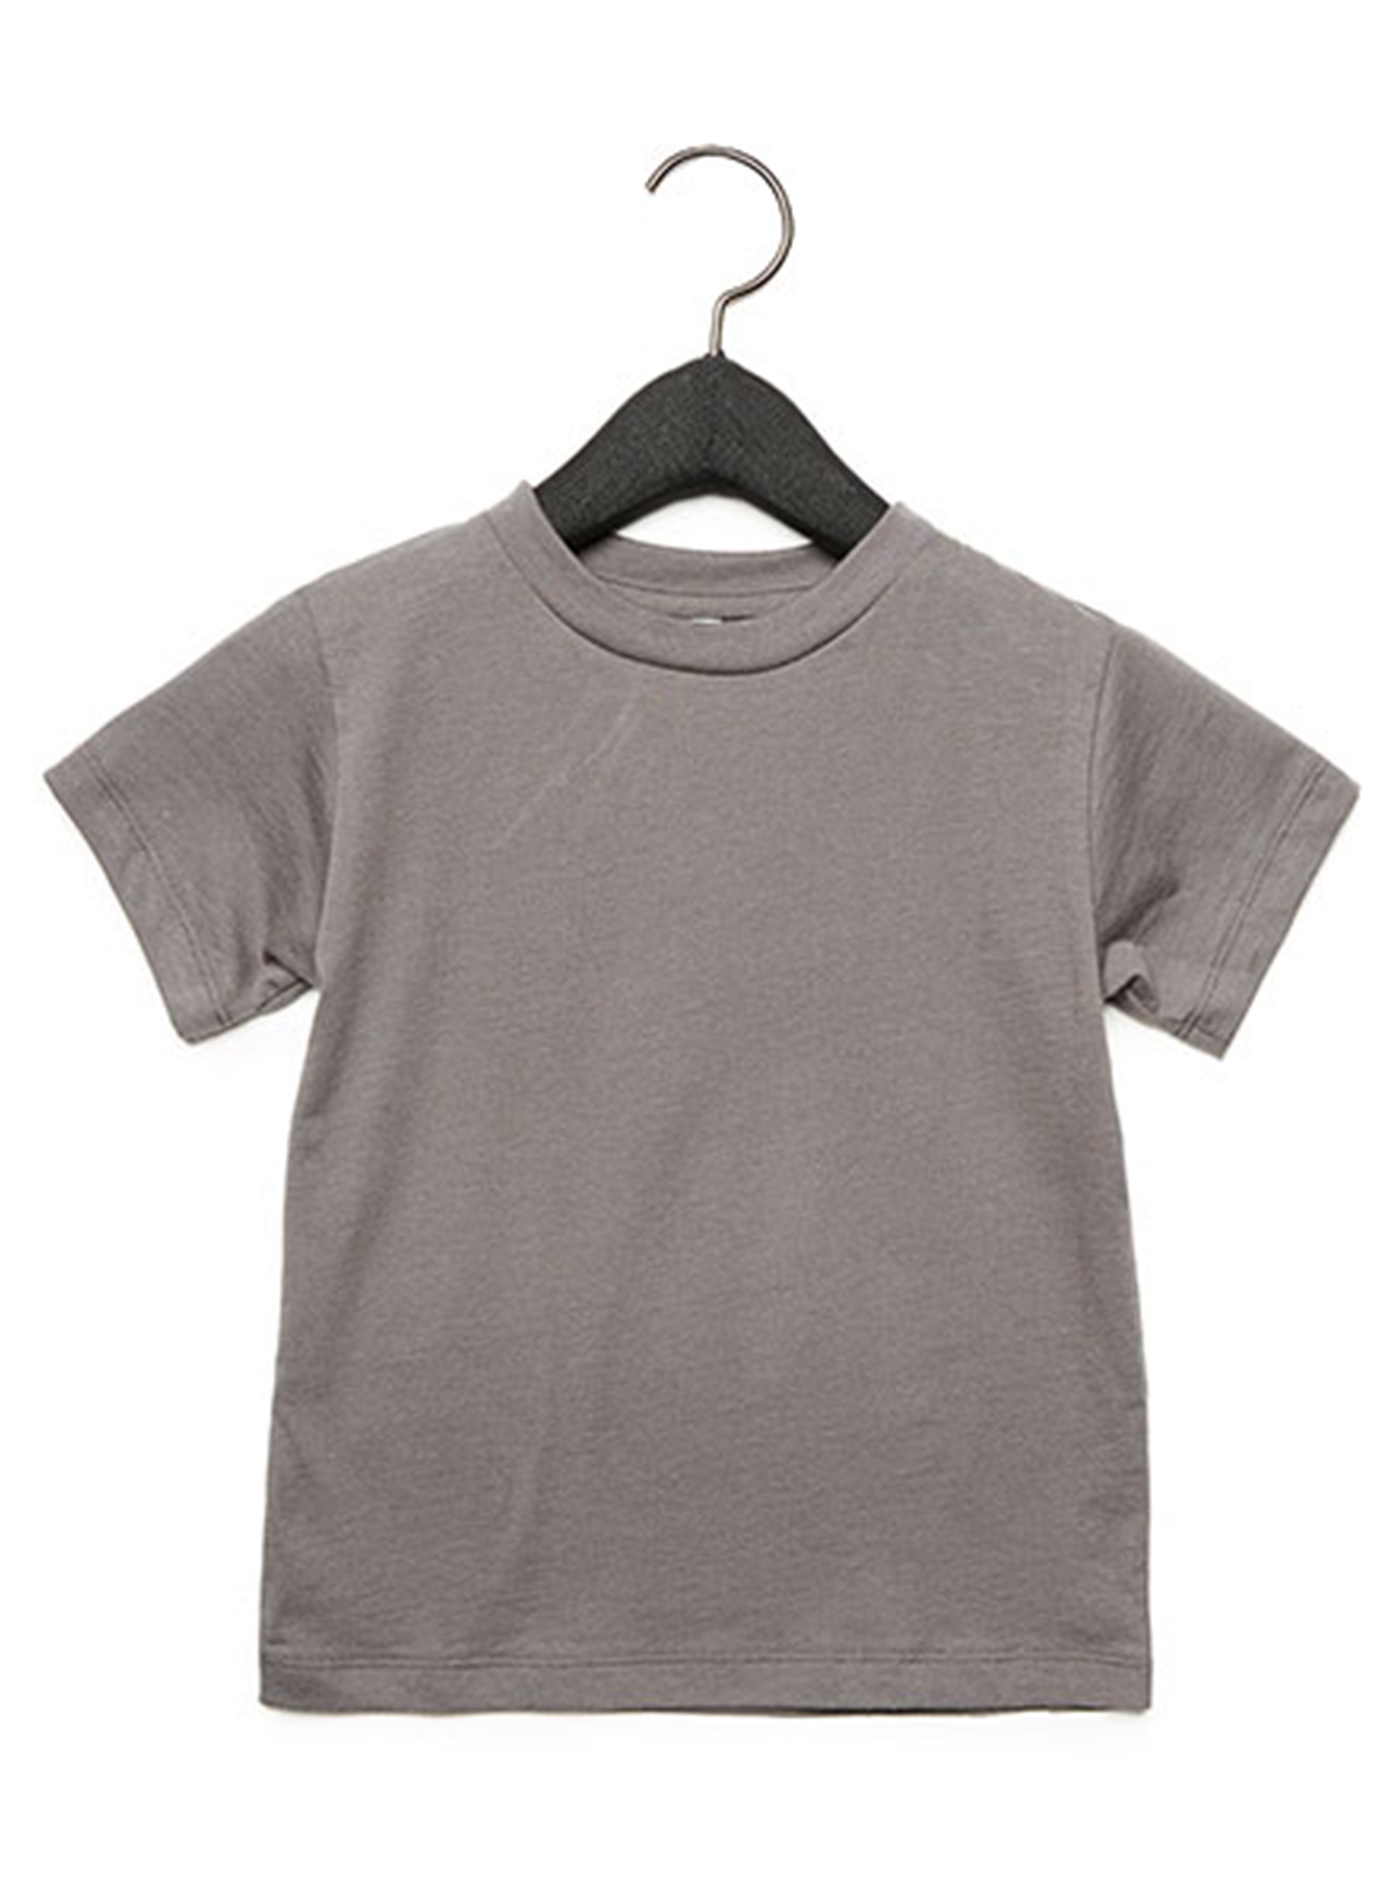 Dětské tričko Jersey - Šedá 2T (92)